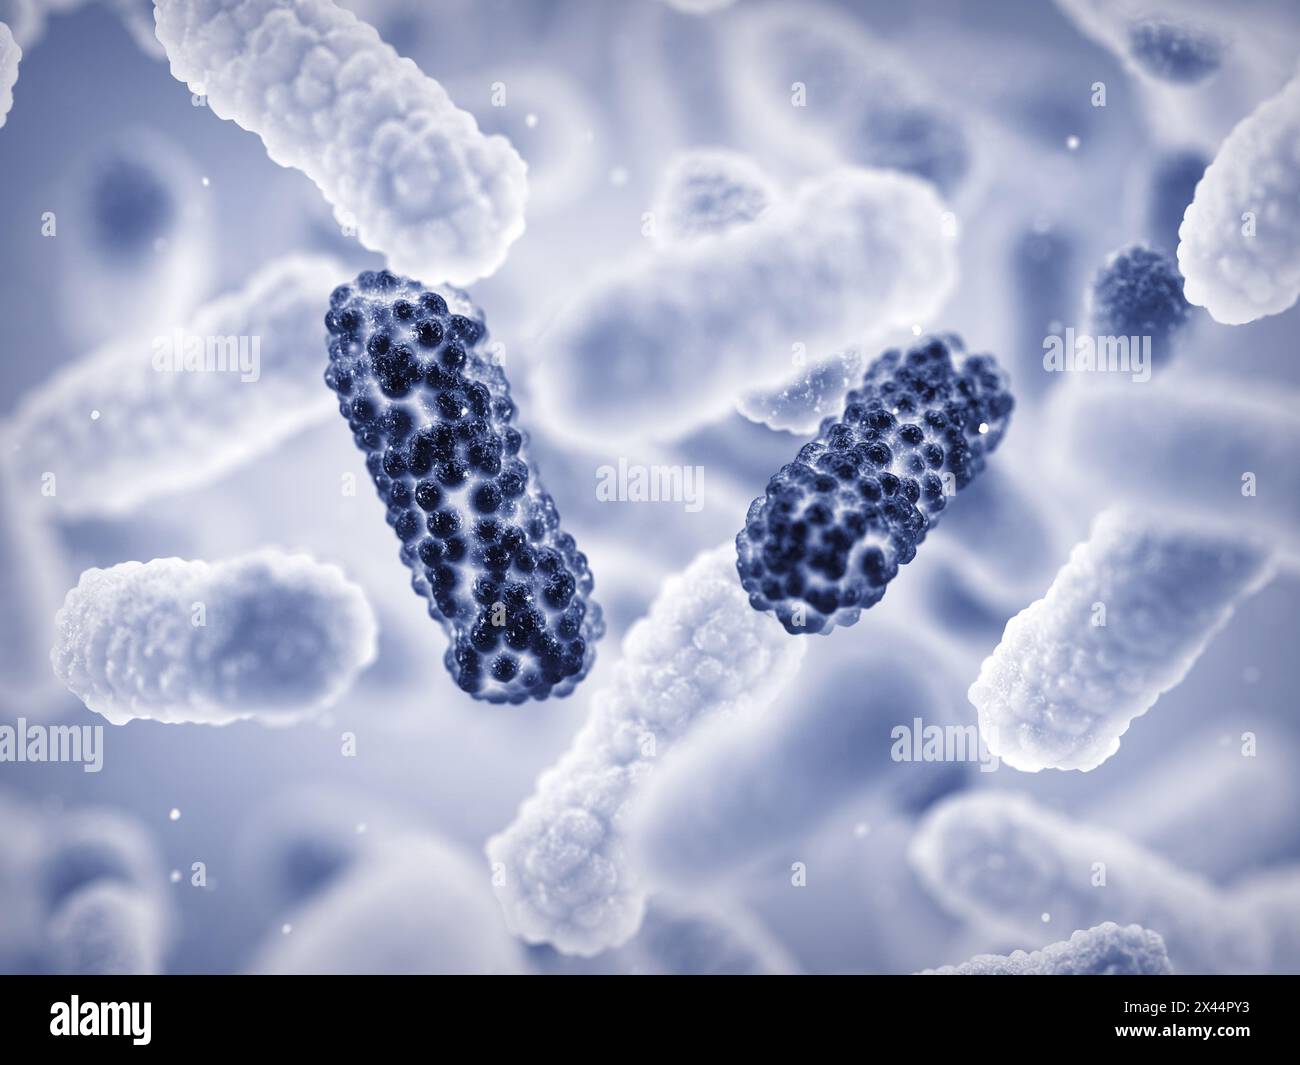 La resistenza antimicrobica (AMR) si verifica quando i batteri cambiano nel tempo e sviluppano la capacità di sconfiggere i farmaci progettati per ucciderli. Foto Stock